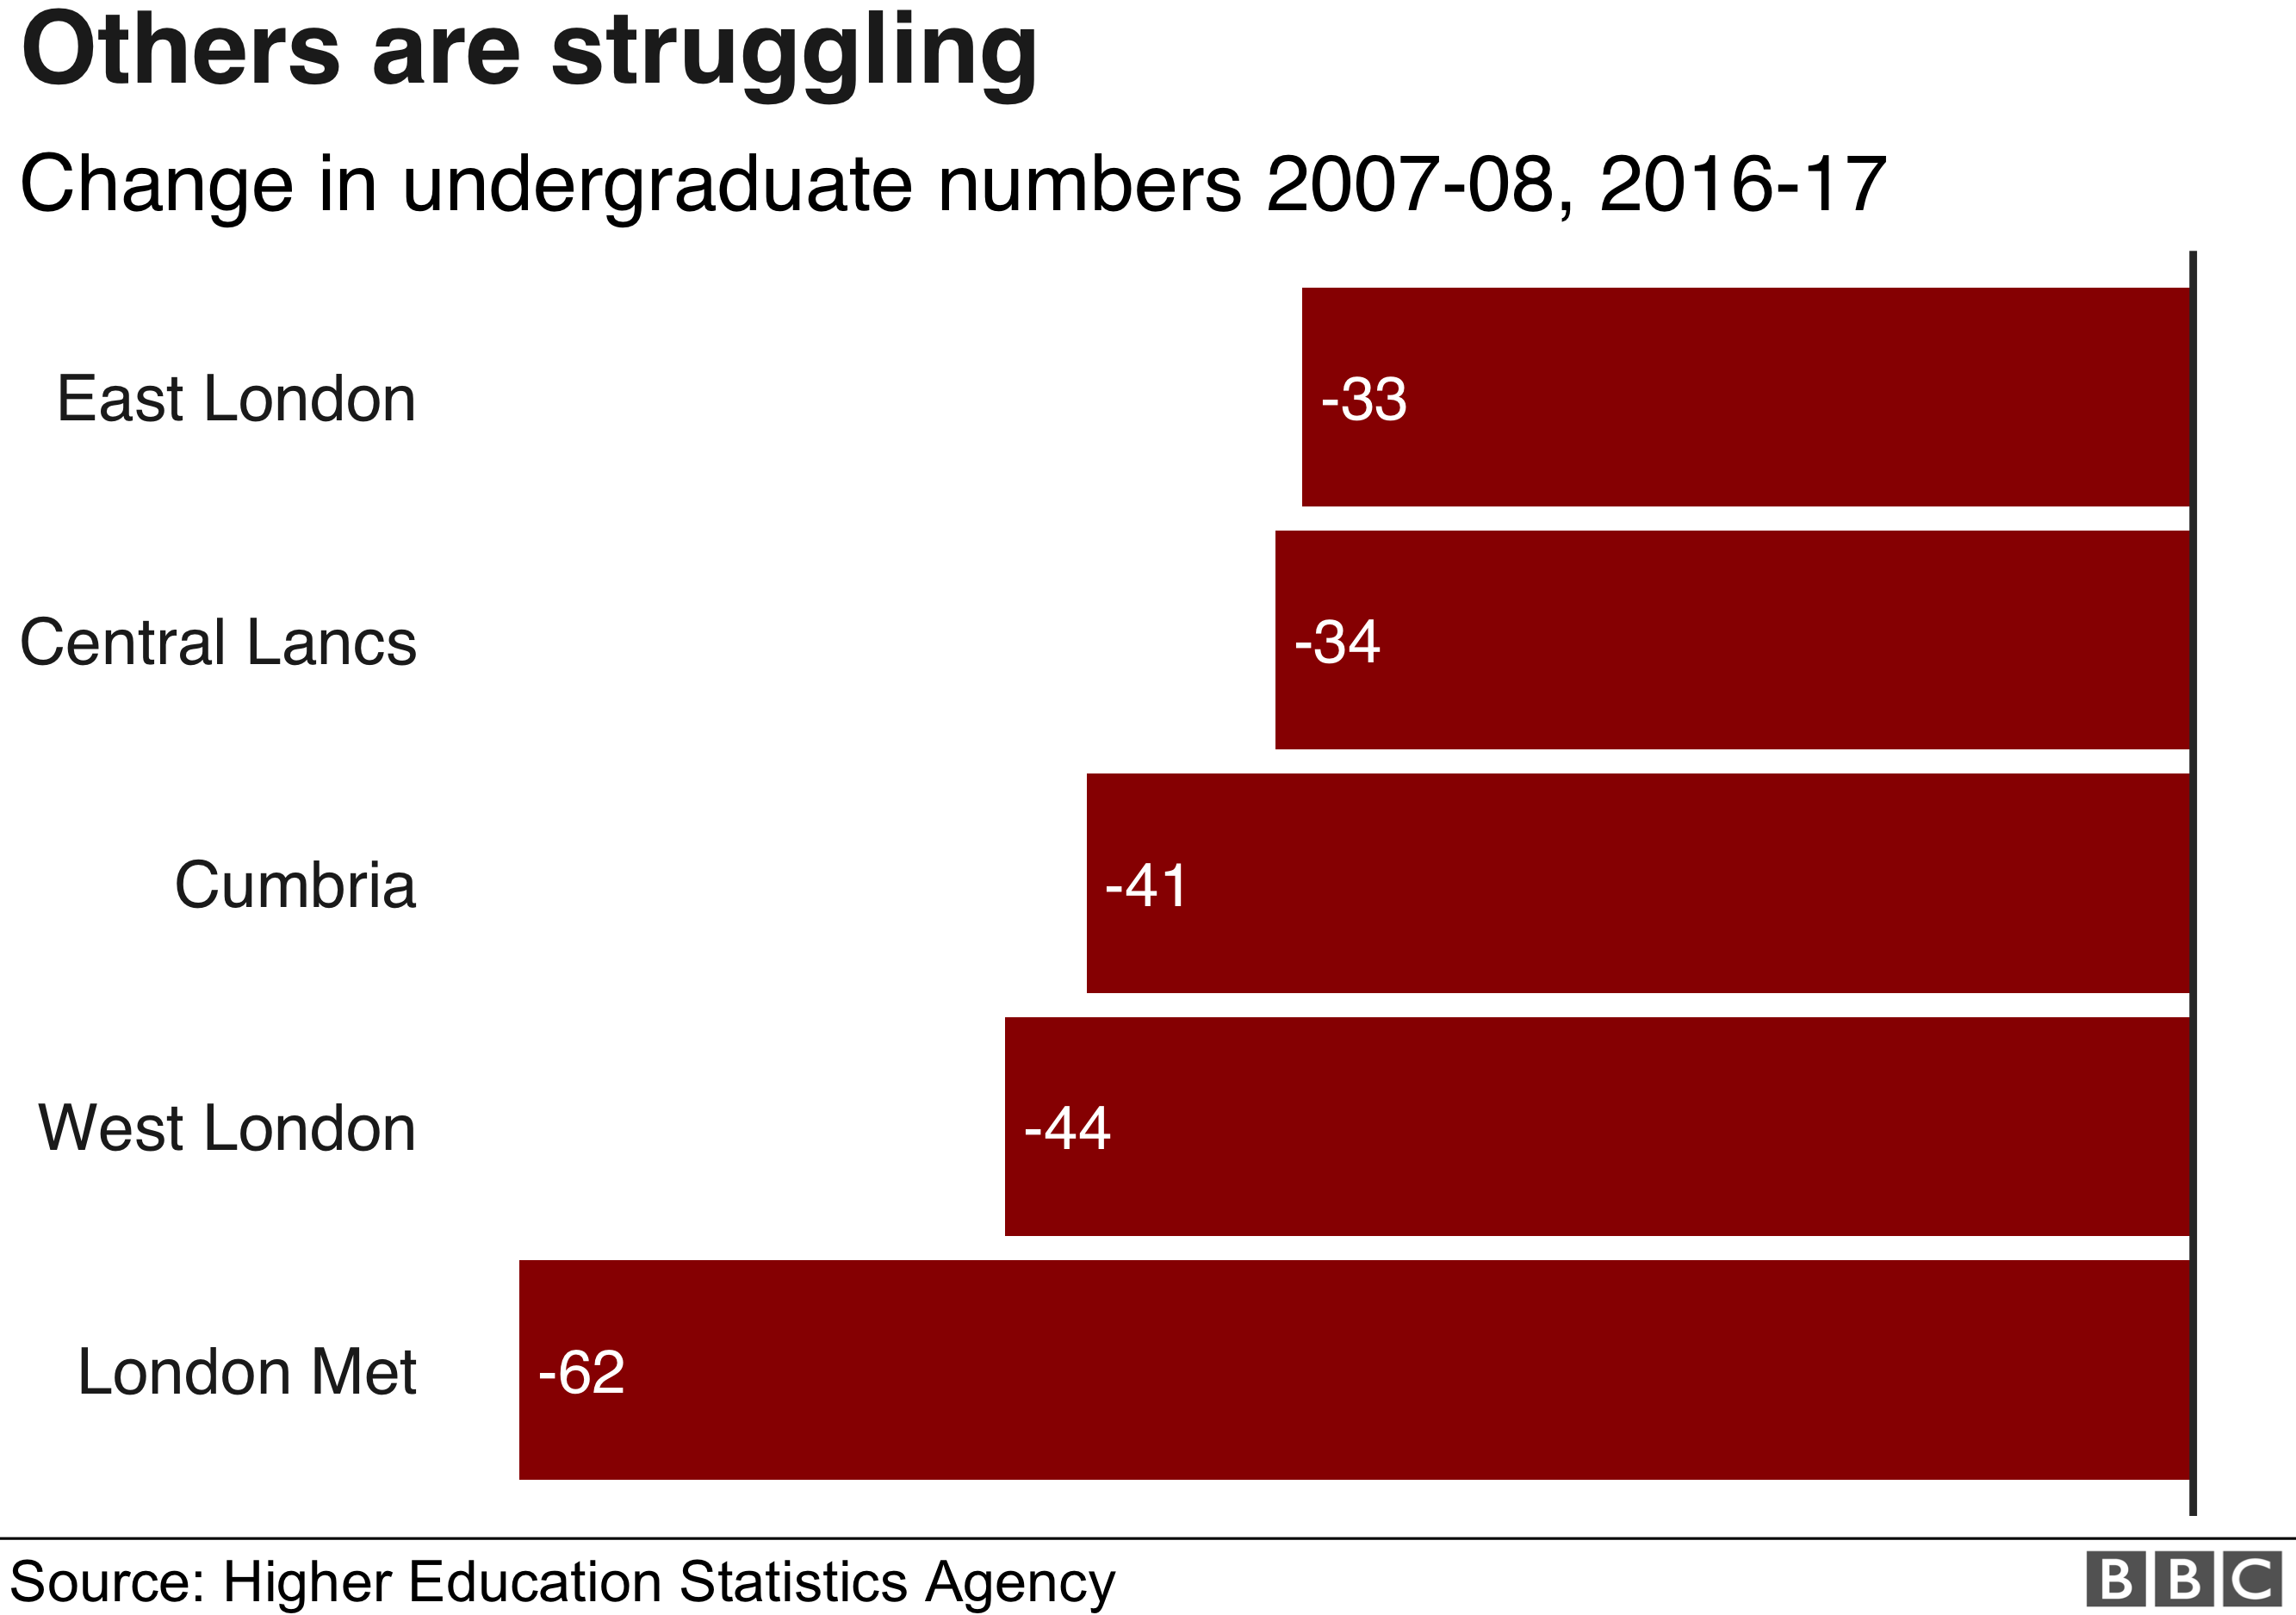 Восточный Лондон, Центральные Ланка, Камбрия, западный Лондон и Лондон Мет - это пять университетов, в которых произошло наибольшее снижение в период с 2007-07 по 2016-17 гг.